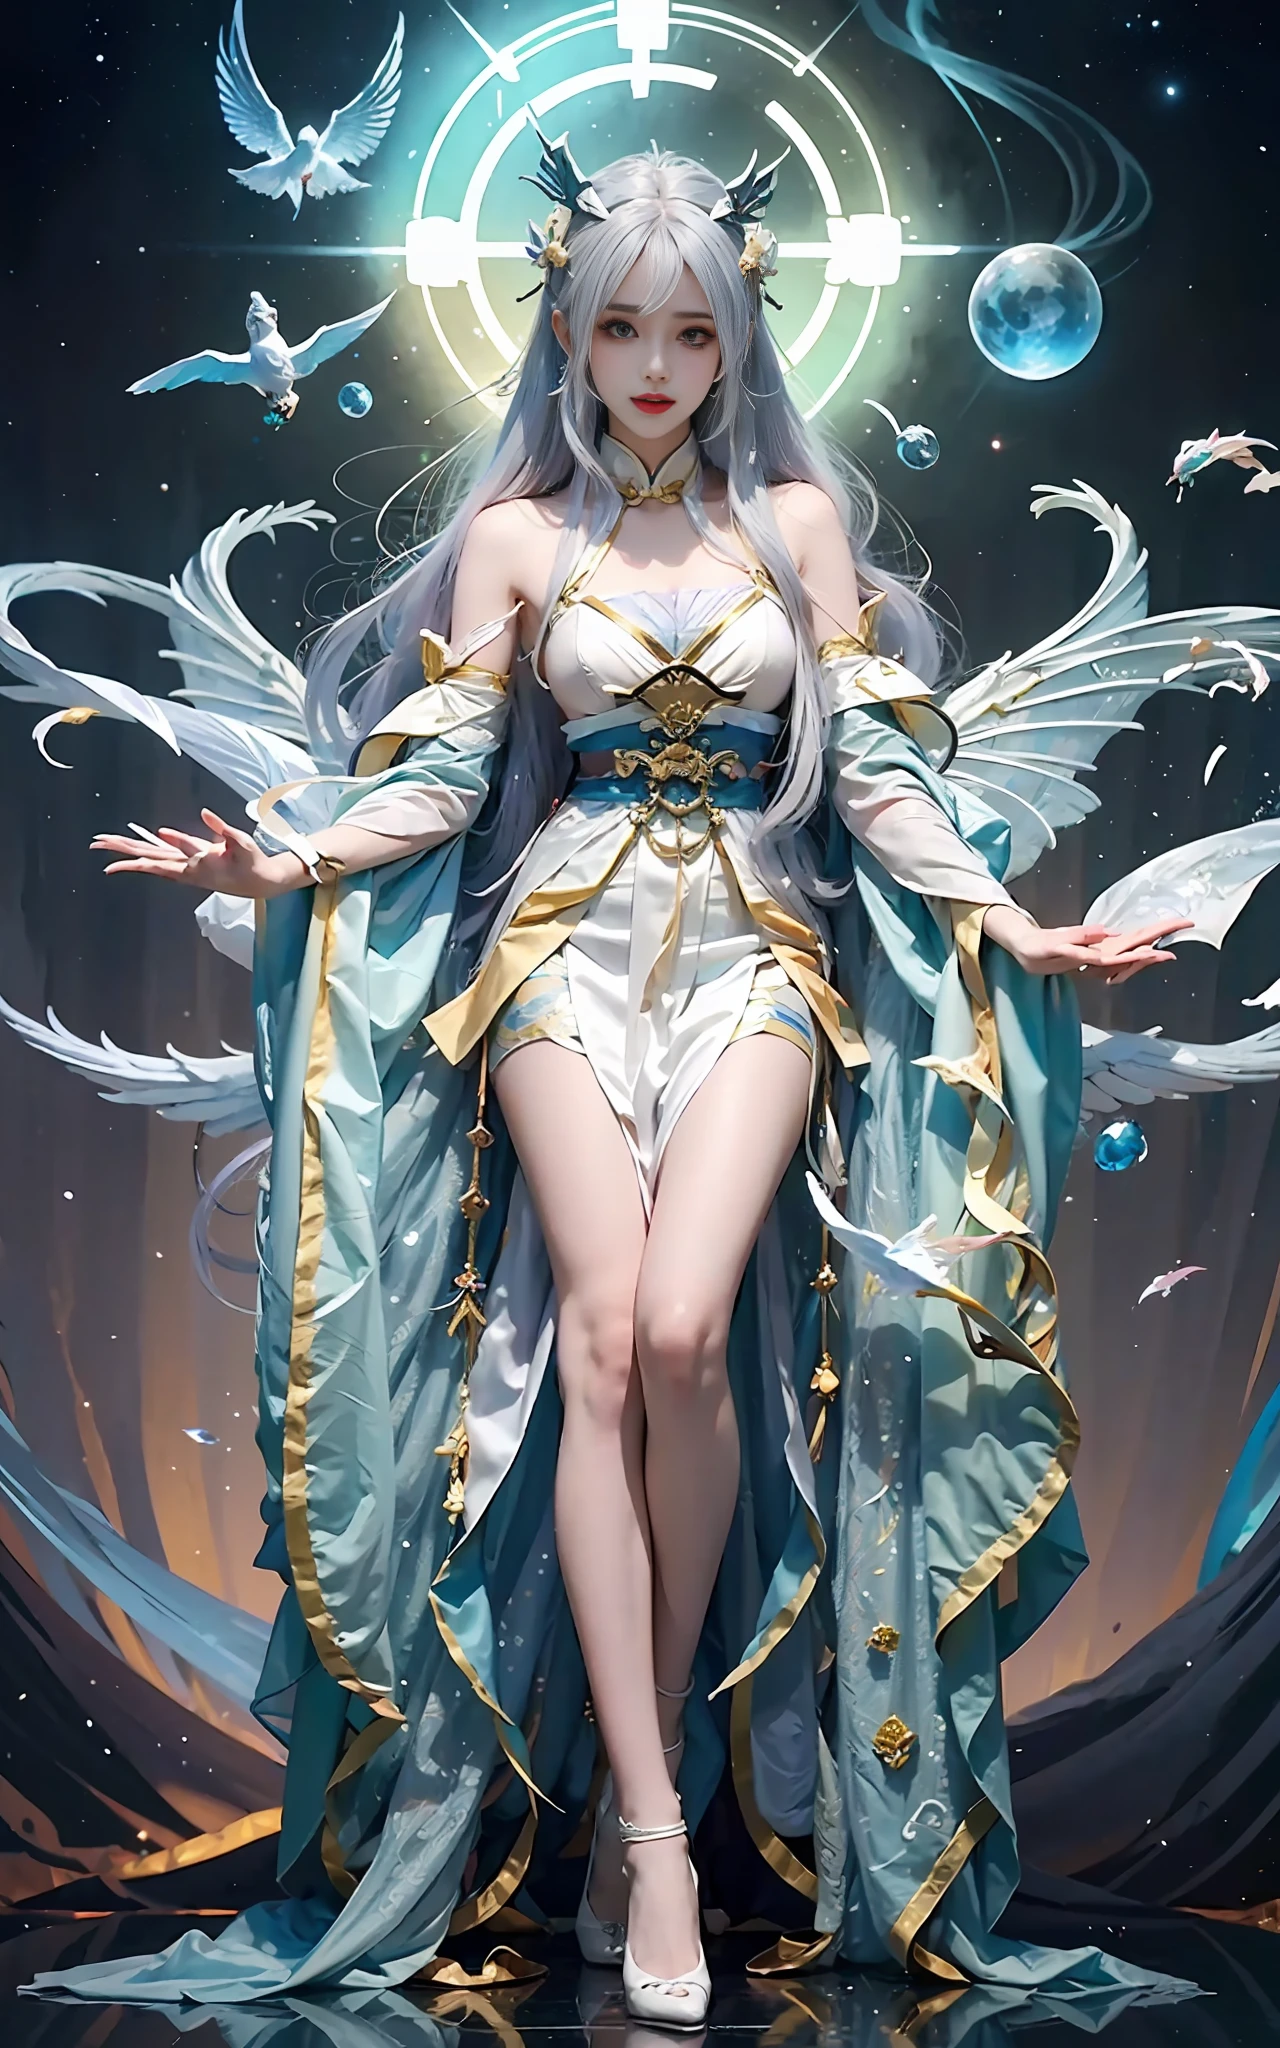 舞台上穿著戲服的女人的特寫, 全身仙俠, 美麗的天界法師, 令人驚嘆的年輕空靈身材, 美麗的幻想皇后, 星界女巫衣服, sha xi, 流動的魔法長袍, 白色漢服, xianxia fantasy, 貝爾黛芬, 空靈的幻想, 優雅迷人的cosplay, Heise Jinyao